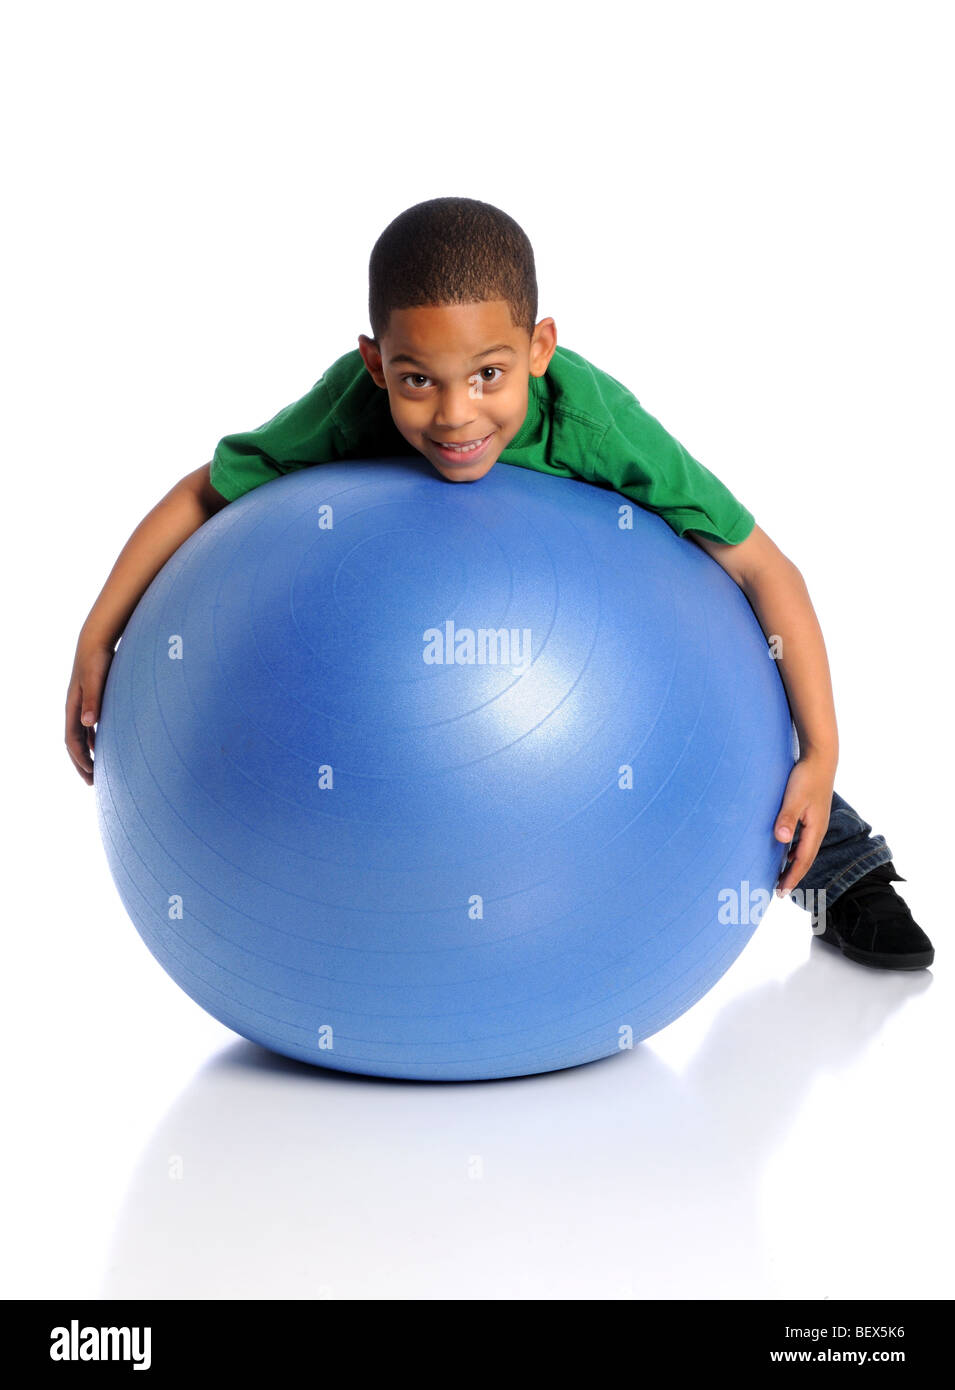 Afrikanische amerikanische Kind spielt mit großen Kugel auf weißem Hintergrund Stockfoto